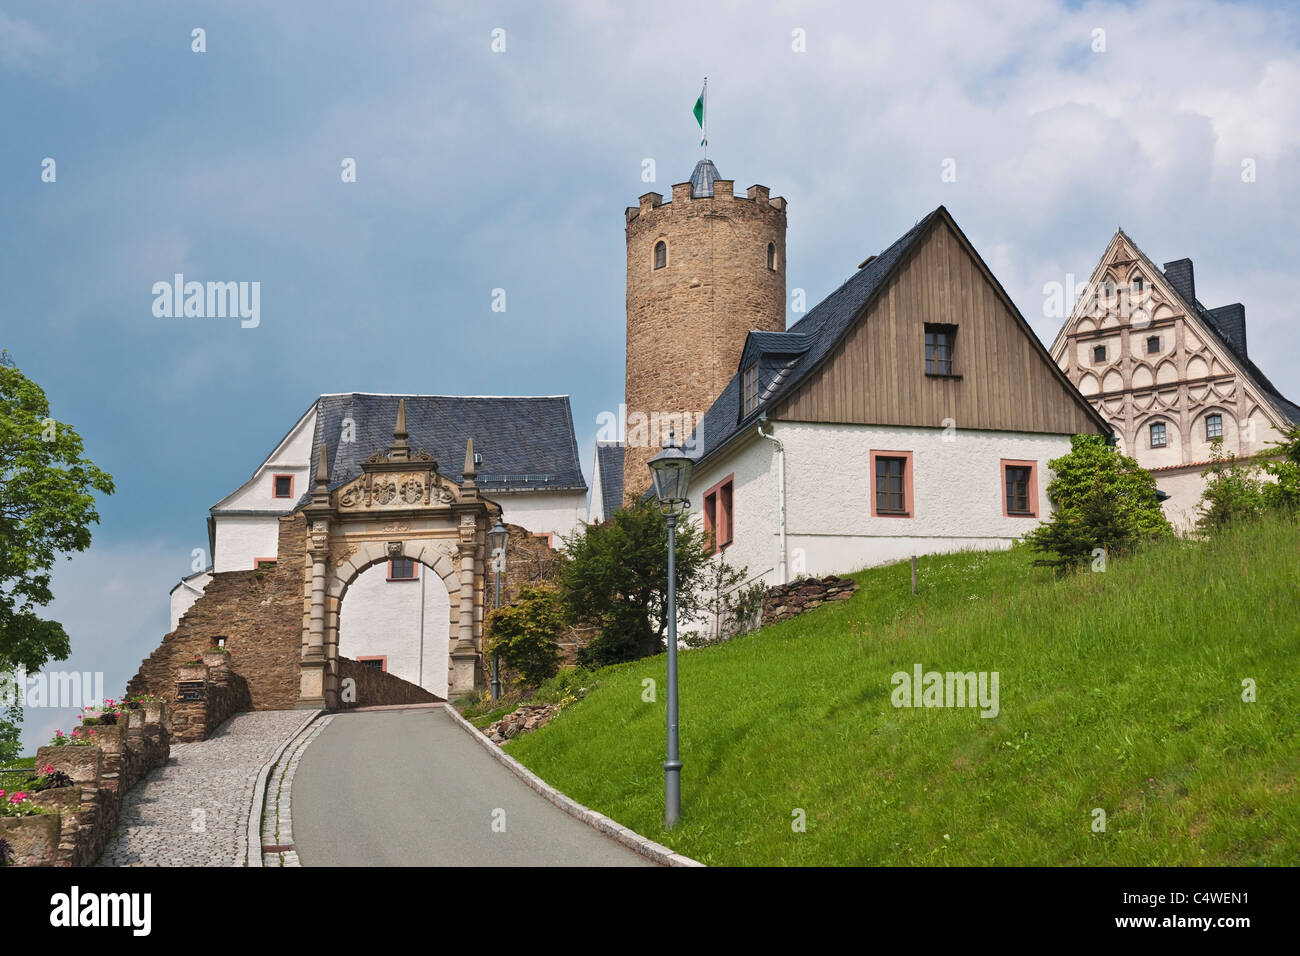 Burg Scharfenstein, Sachsen | Scharfstein castle, Saxony Stock Photo ...